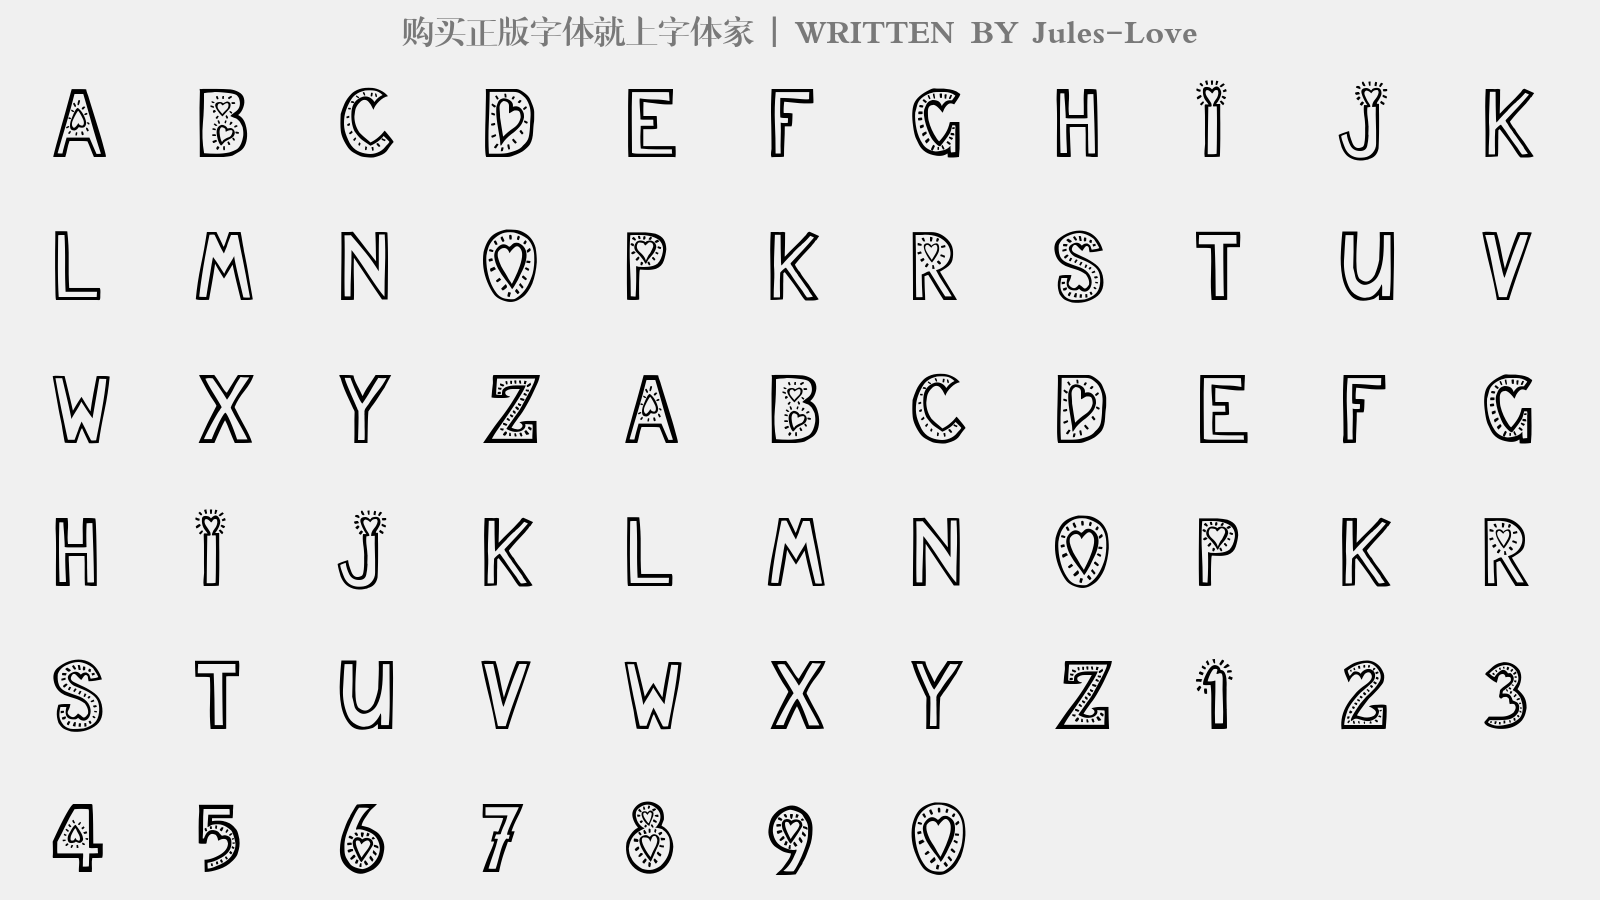 Jules-Love - 大写字母/小写字母/数字